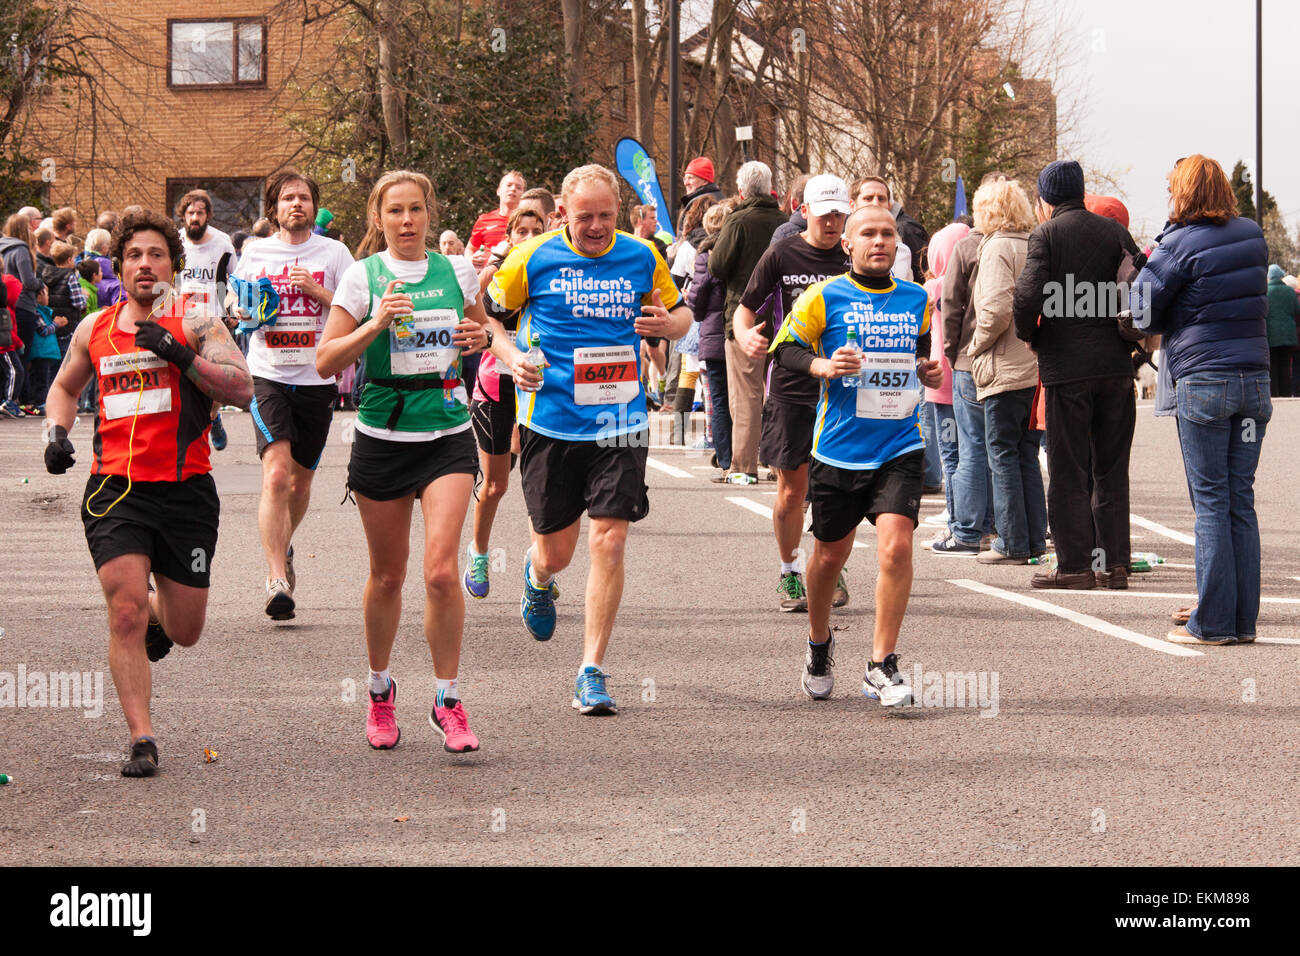 Sheffield, Royaume-Uni. 12 avril, 2015. Le Sheffield demi-marathon est exécuté sur un parcours très vallonné de commencer dans le centre-ville et de l'escalade 290 TEMI ( 958 pieds). Les coureurs sont sur Ecclesall Road aux 10 mille. Crédit : Eric Murphy/Alamy Live News Banque D'Images